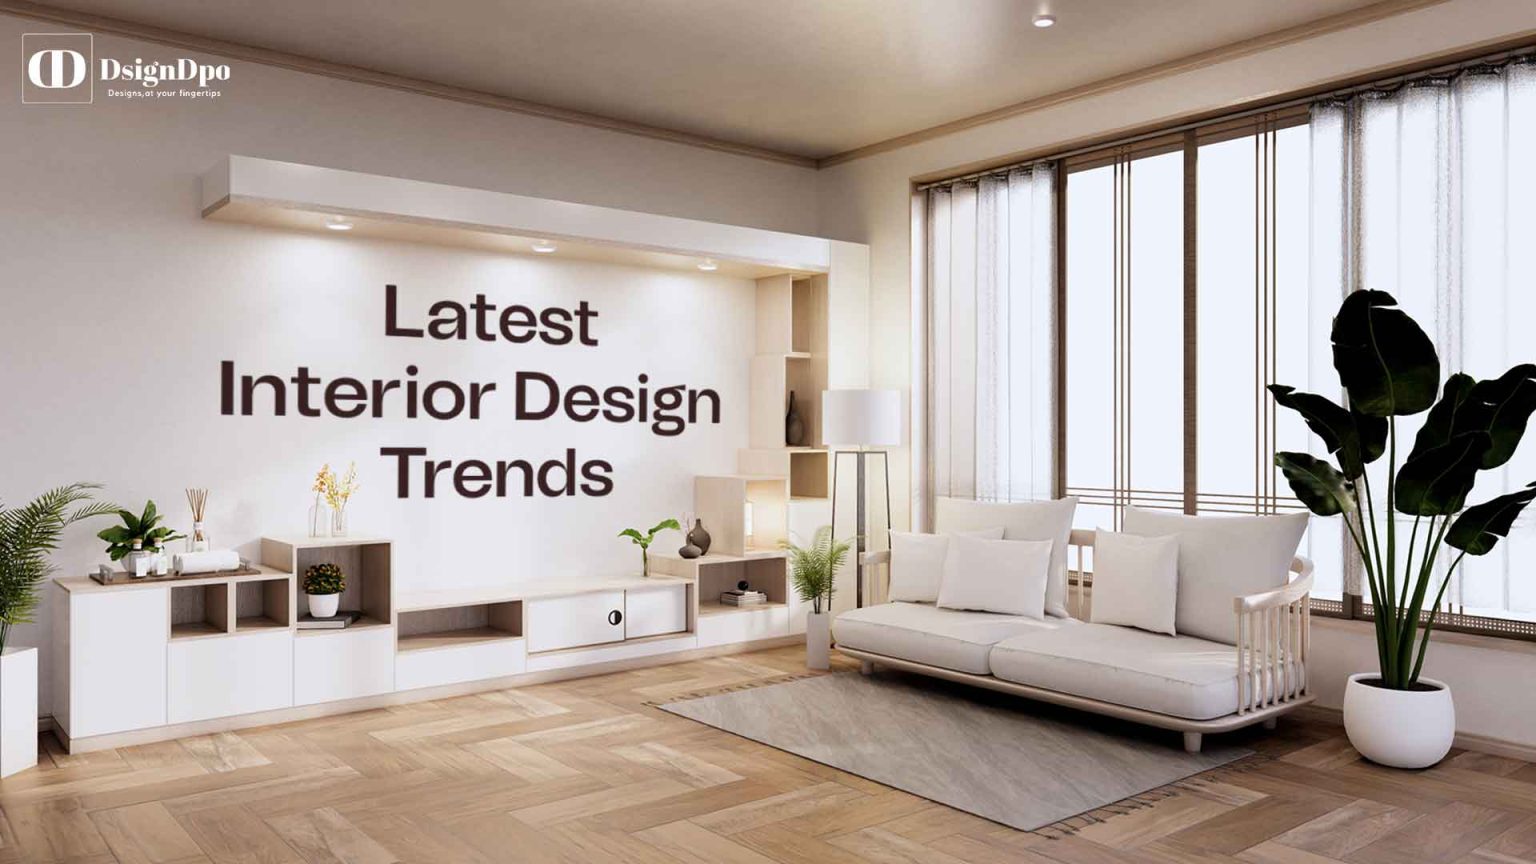 Latest Interior Design Trends 1536x864 